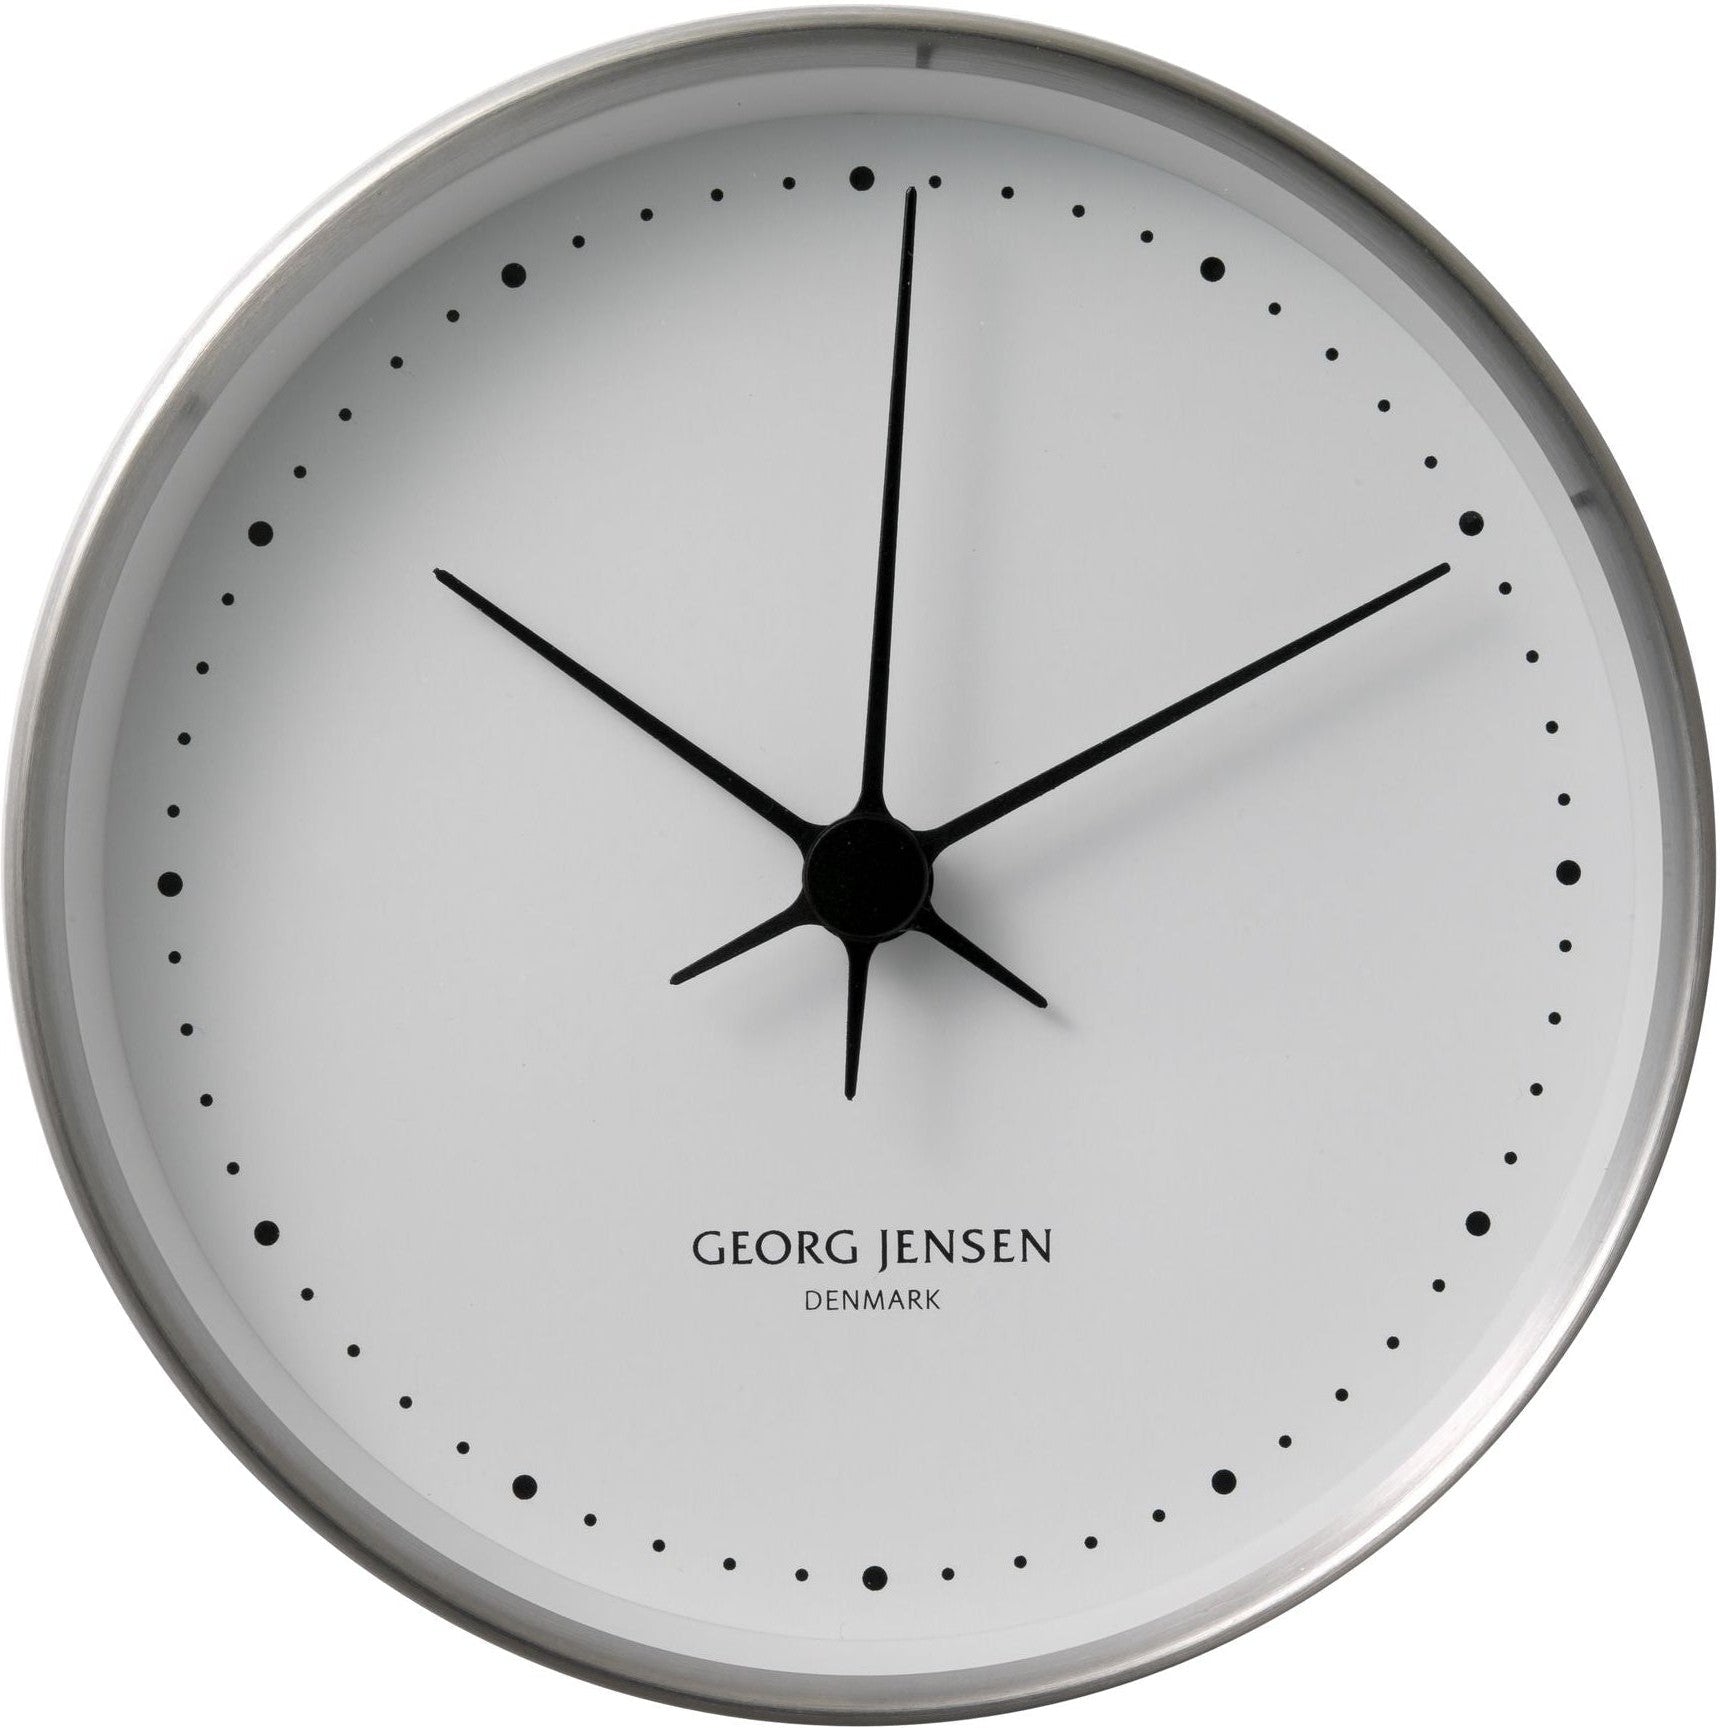 Georg Jensen Hk Wall Clock Stainless Steel/White, 22 Cm